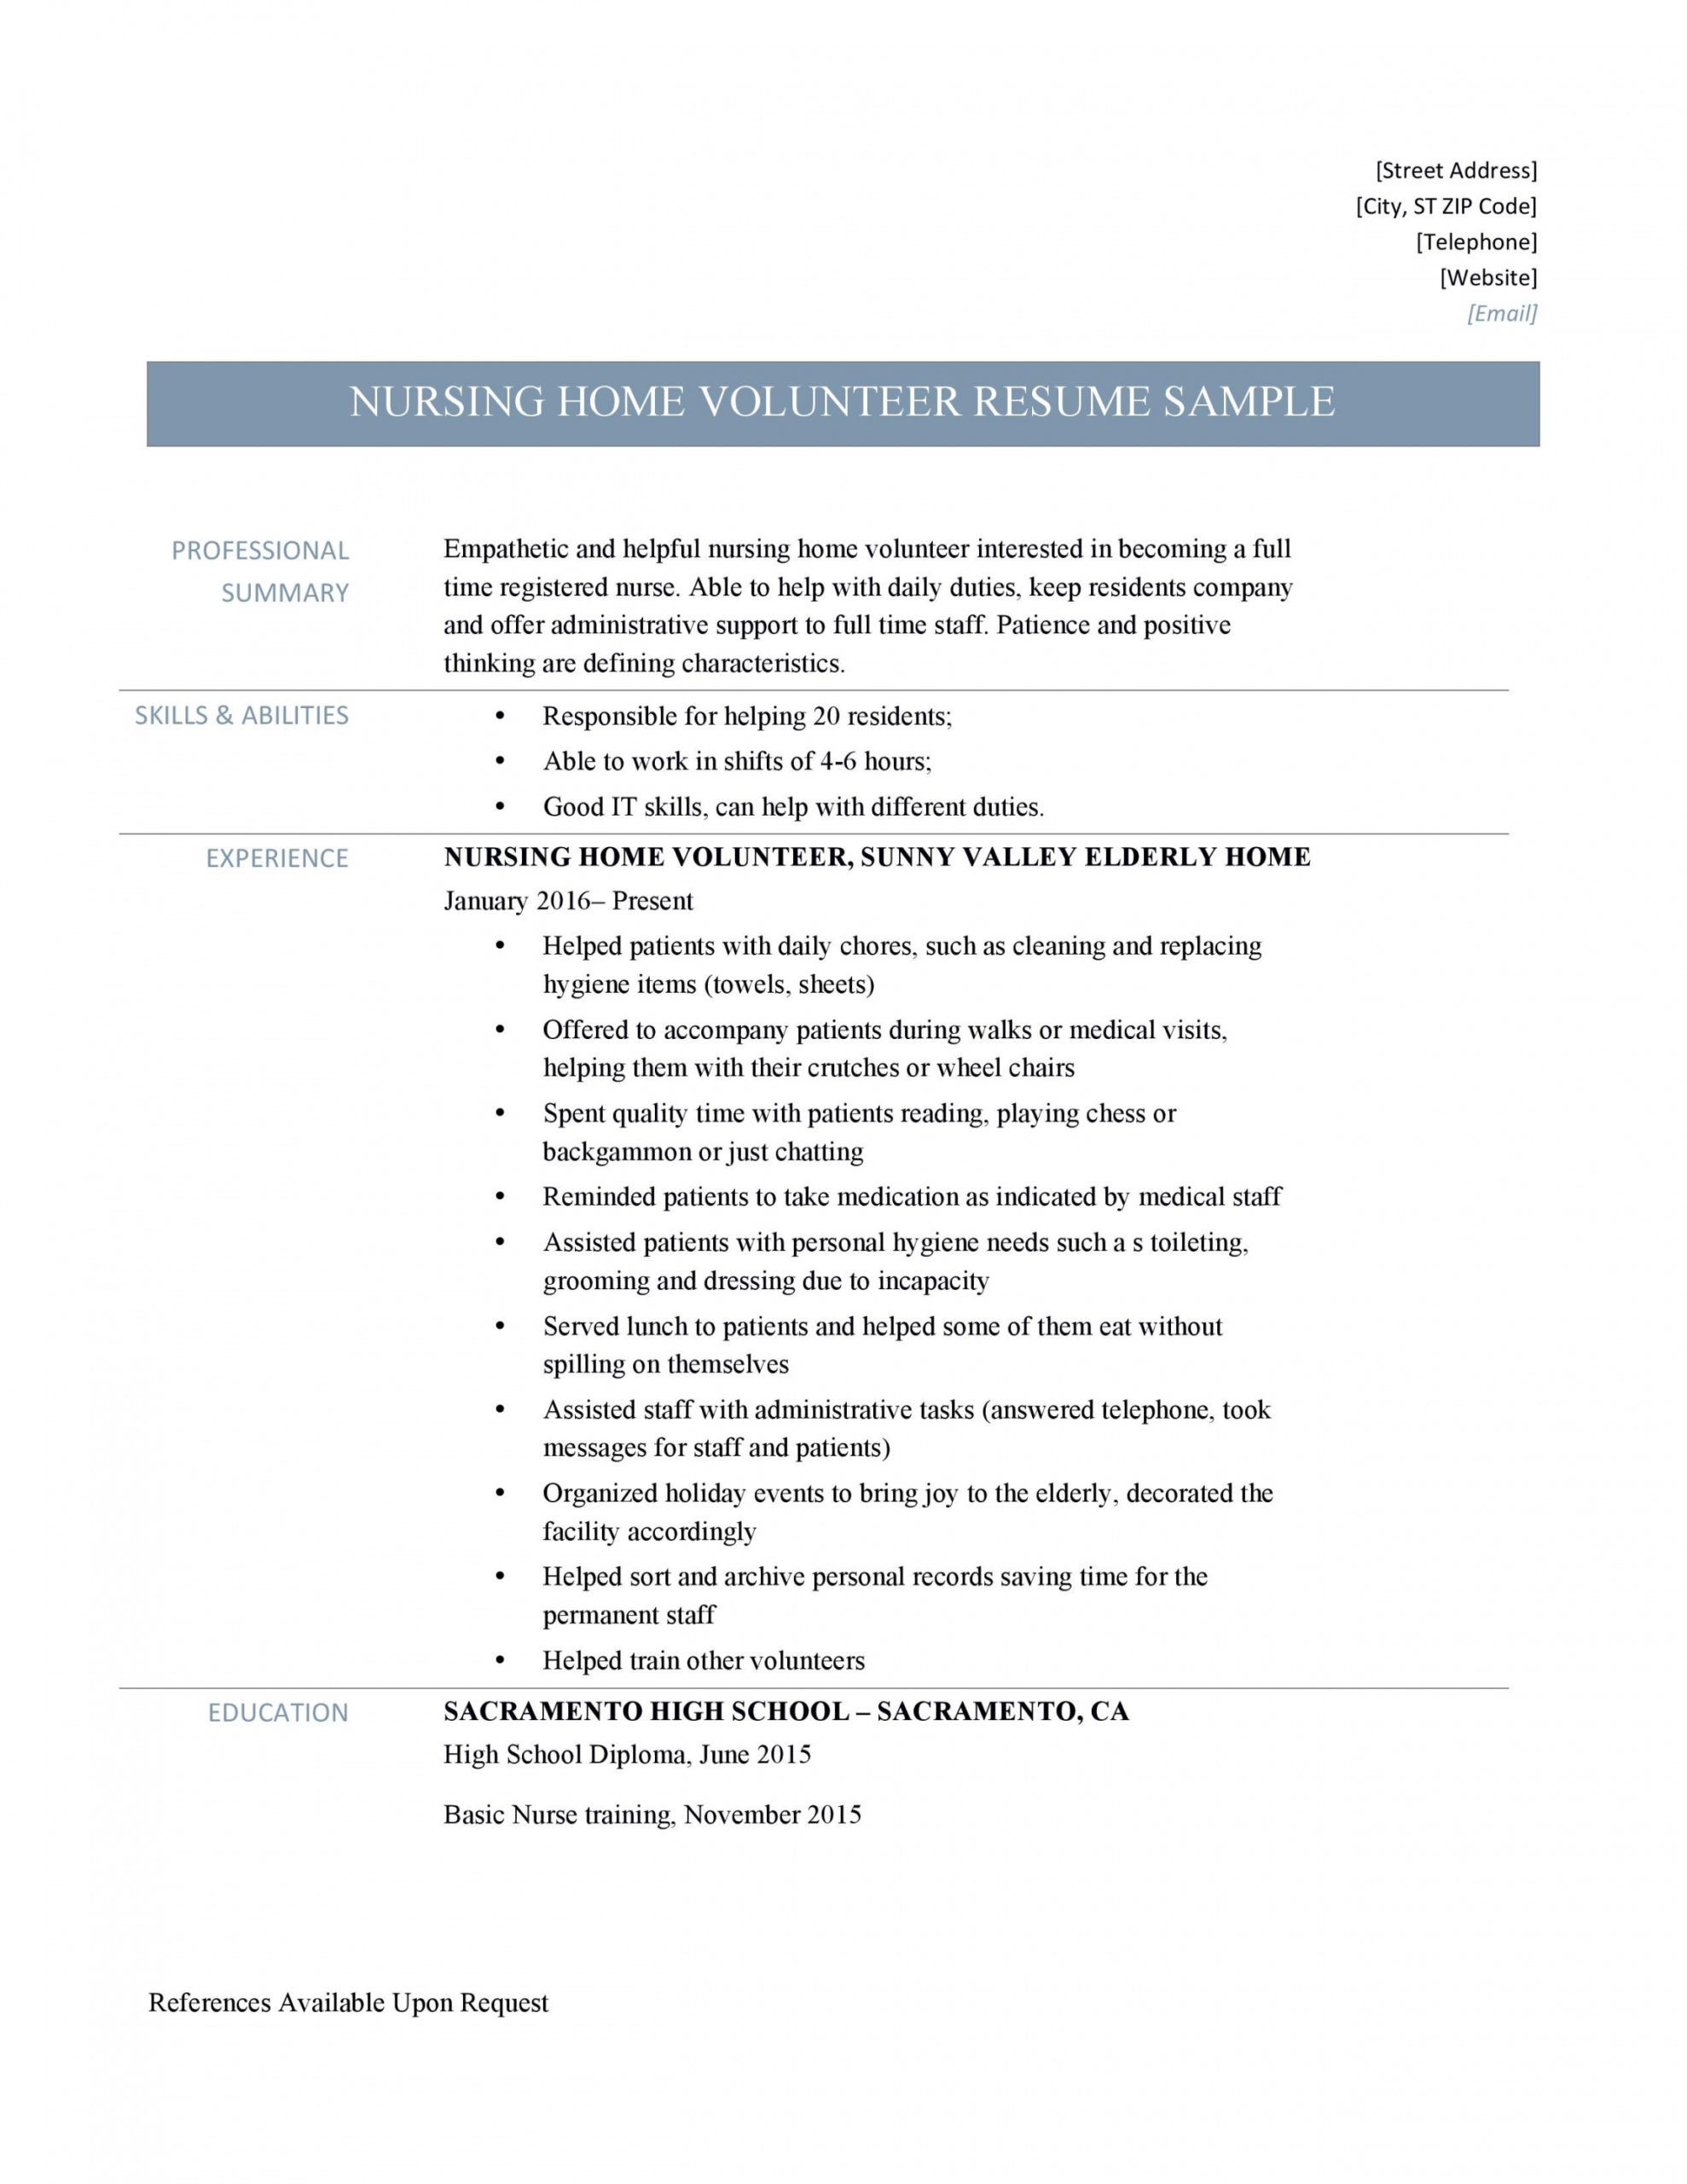 nursing home volunteer resume samples and job description volunteer job description template pdf